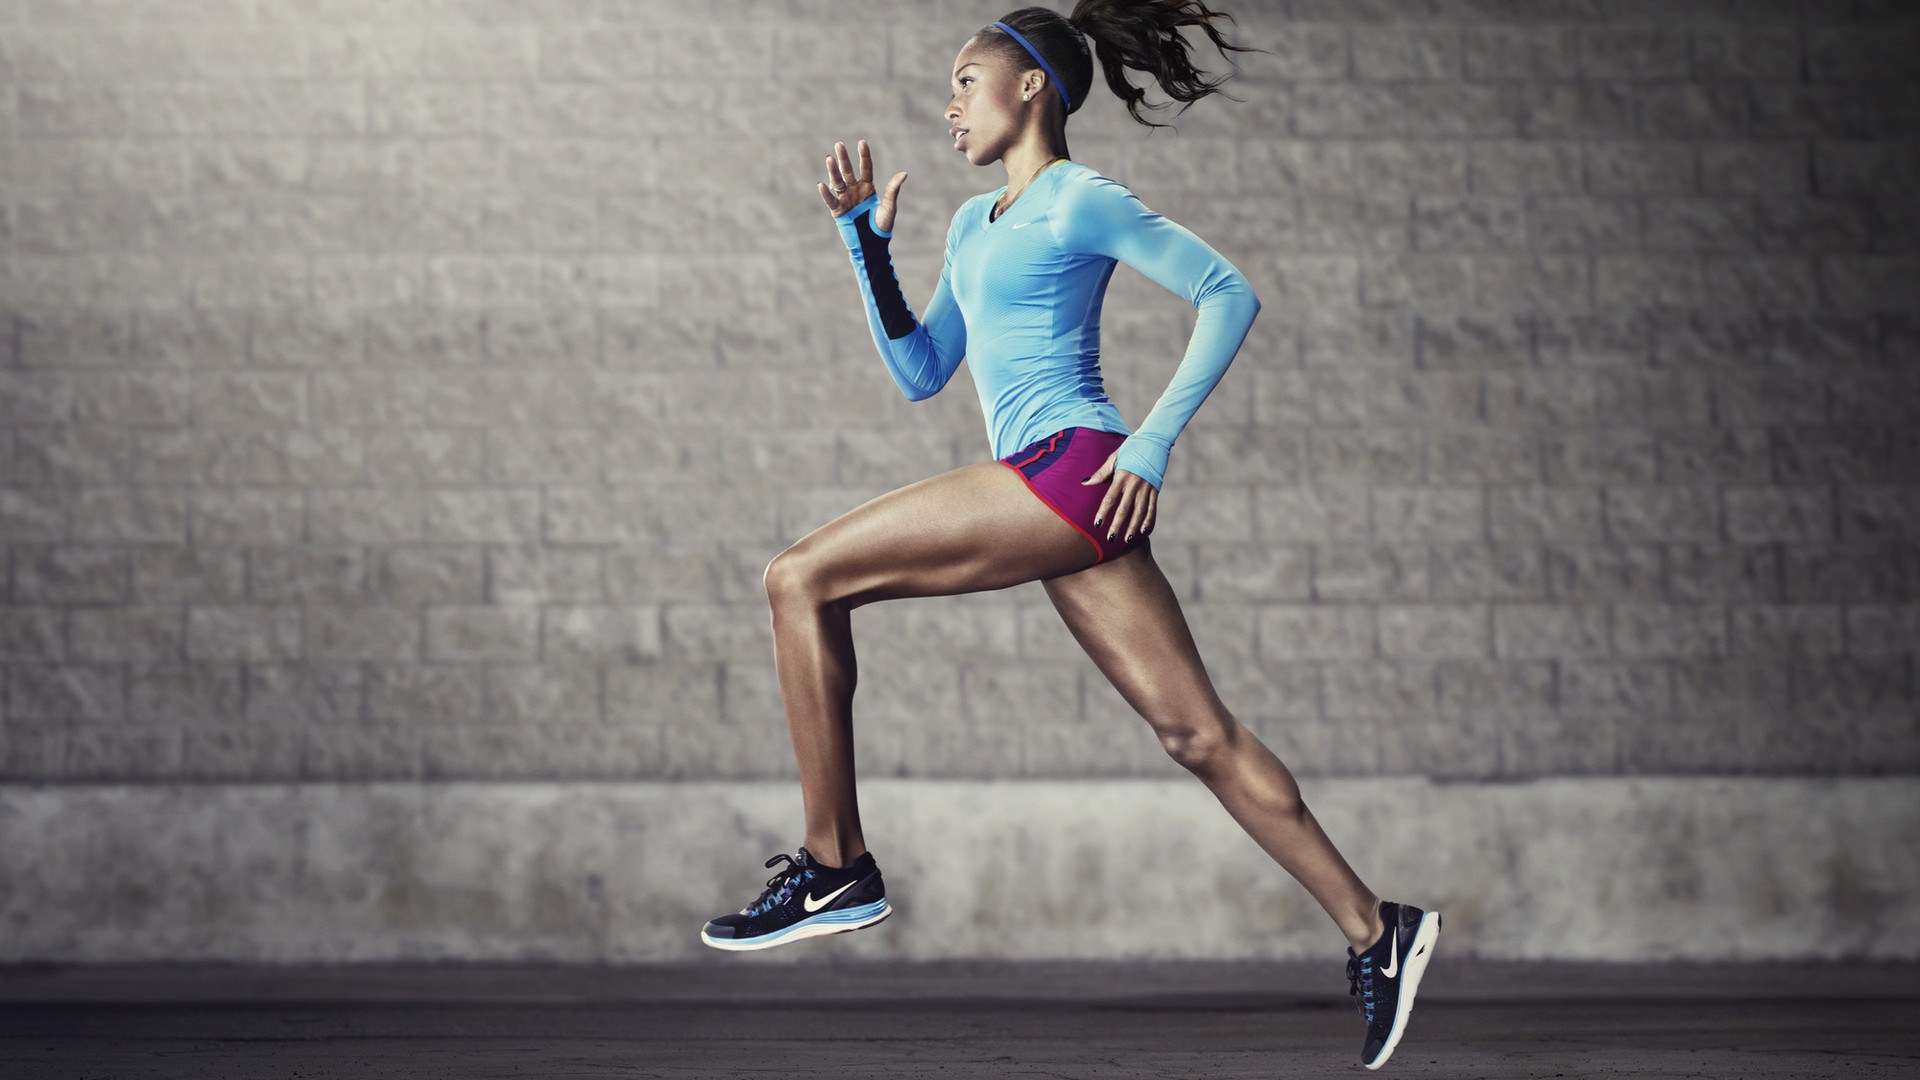 khắc phục đau nhức cơ sau khi chạy bộ